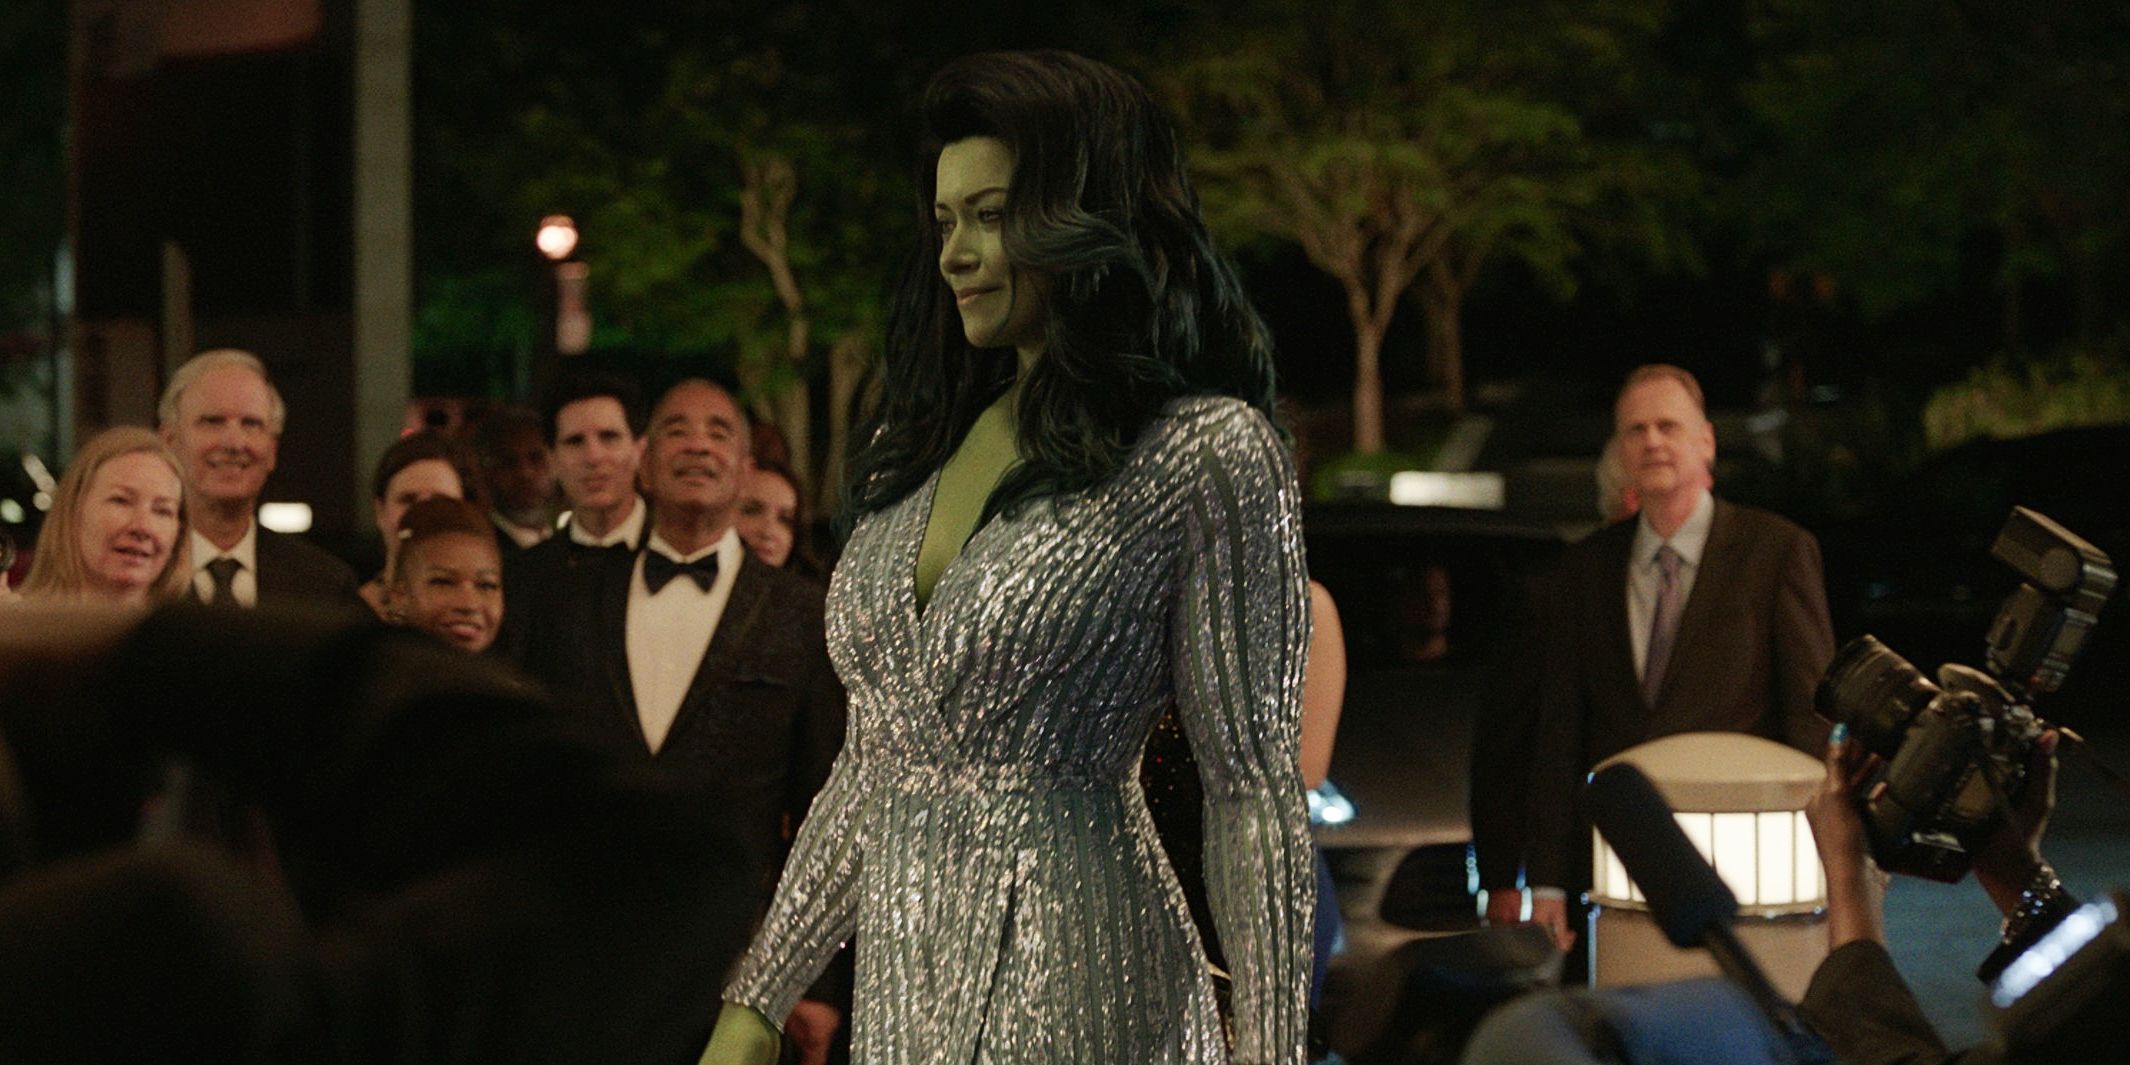 Tatiana Maslani as She-hulk in fancy dress premiere party